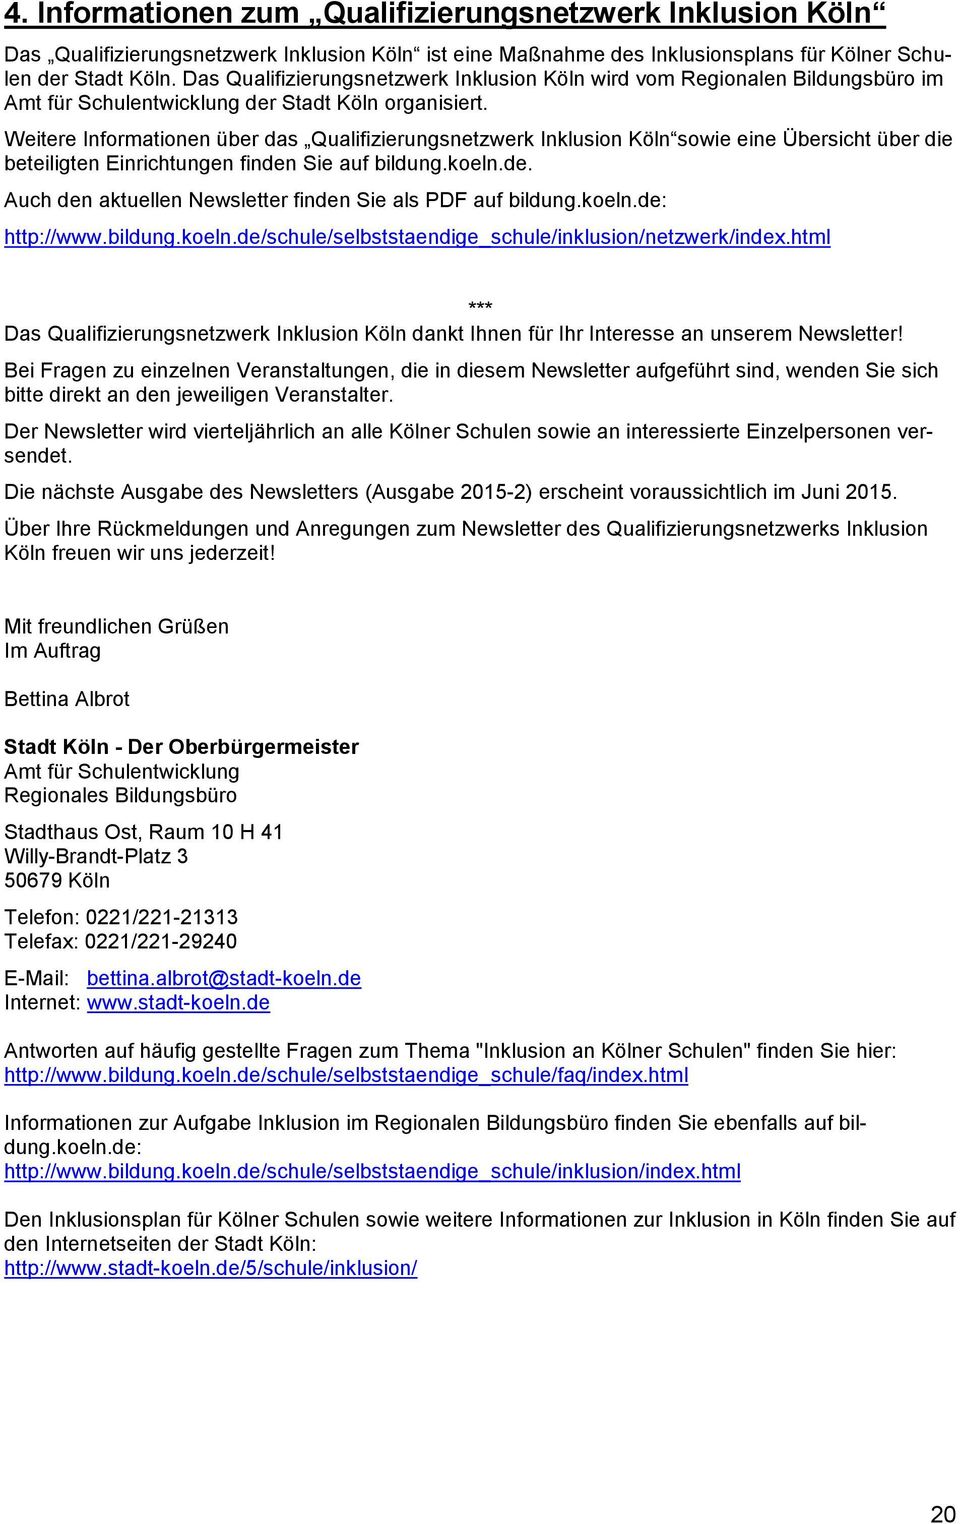 Weitere Informationen über das Qualifizierungsnetzwerk Inklusion Köln sowie eine Übersicht über die beteiligten Einrichtungen finden Sie auf bildung.koeln.de. Auch den aktuellen Newsletter finden Sie als PDF auf bildung.